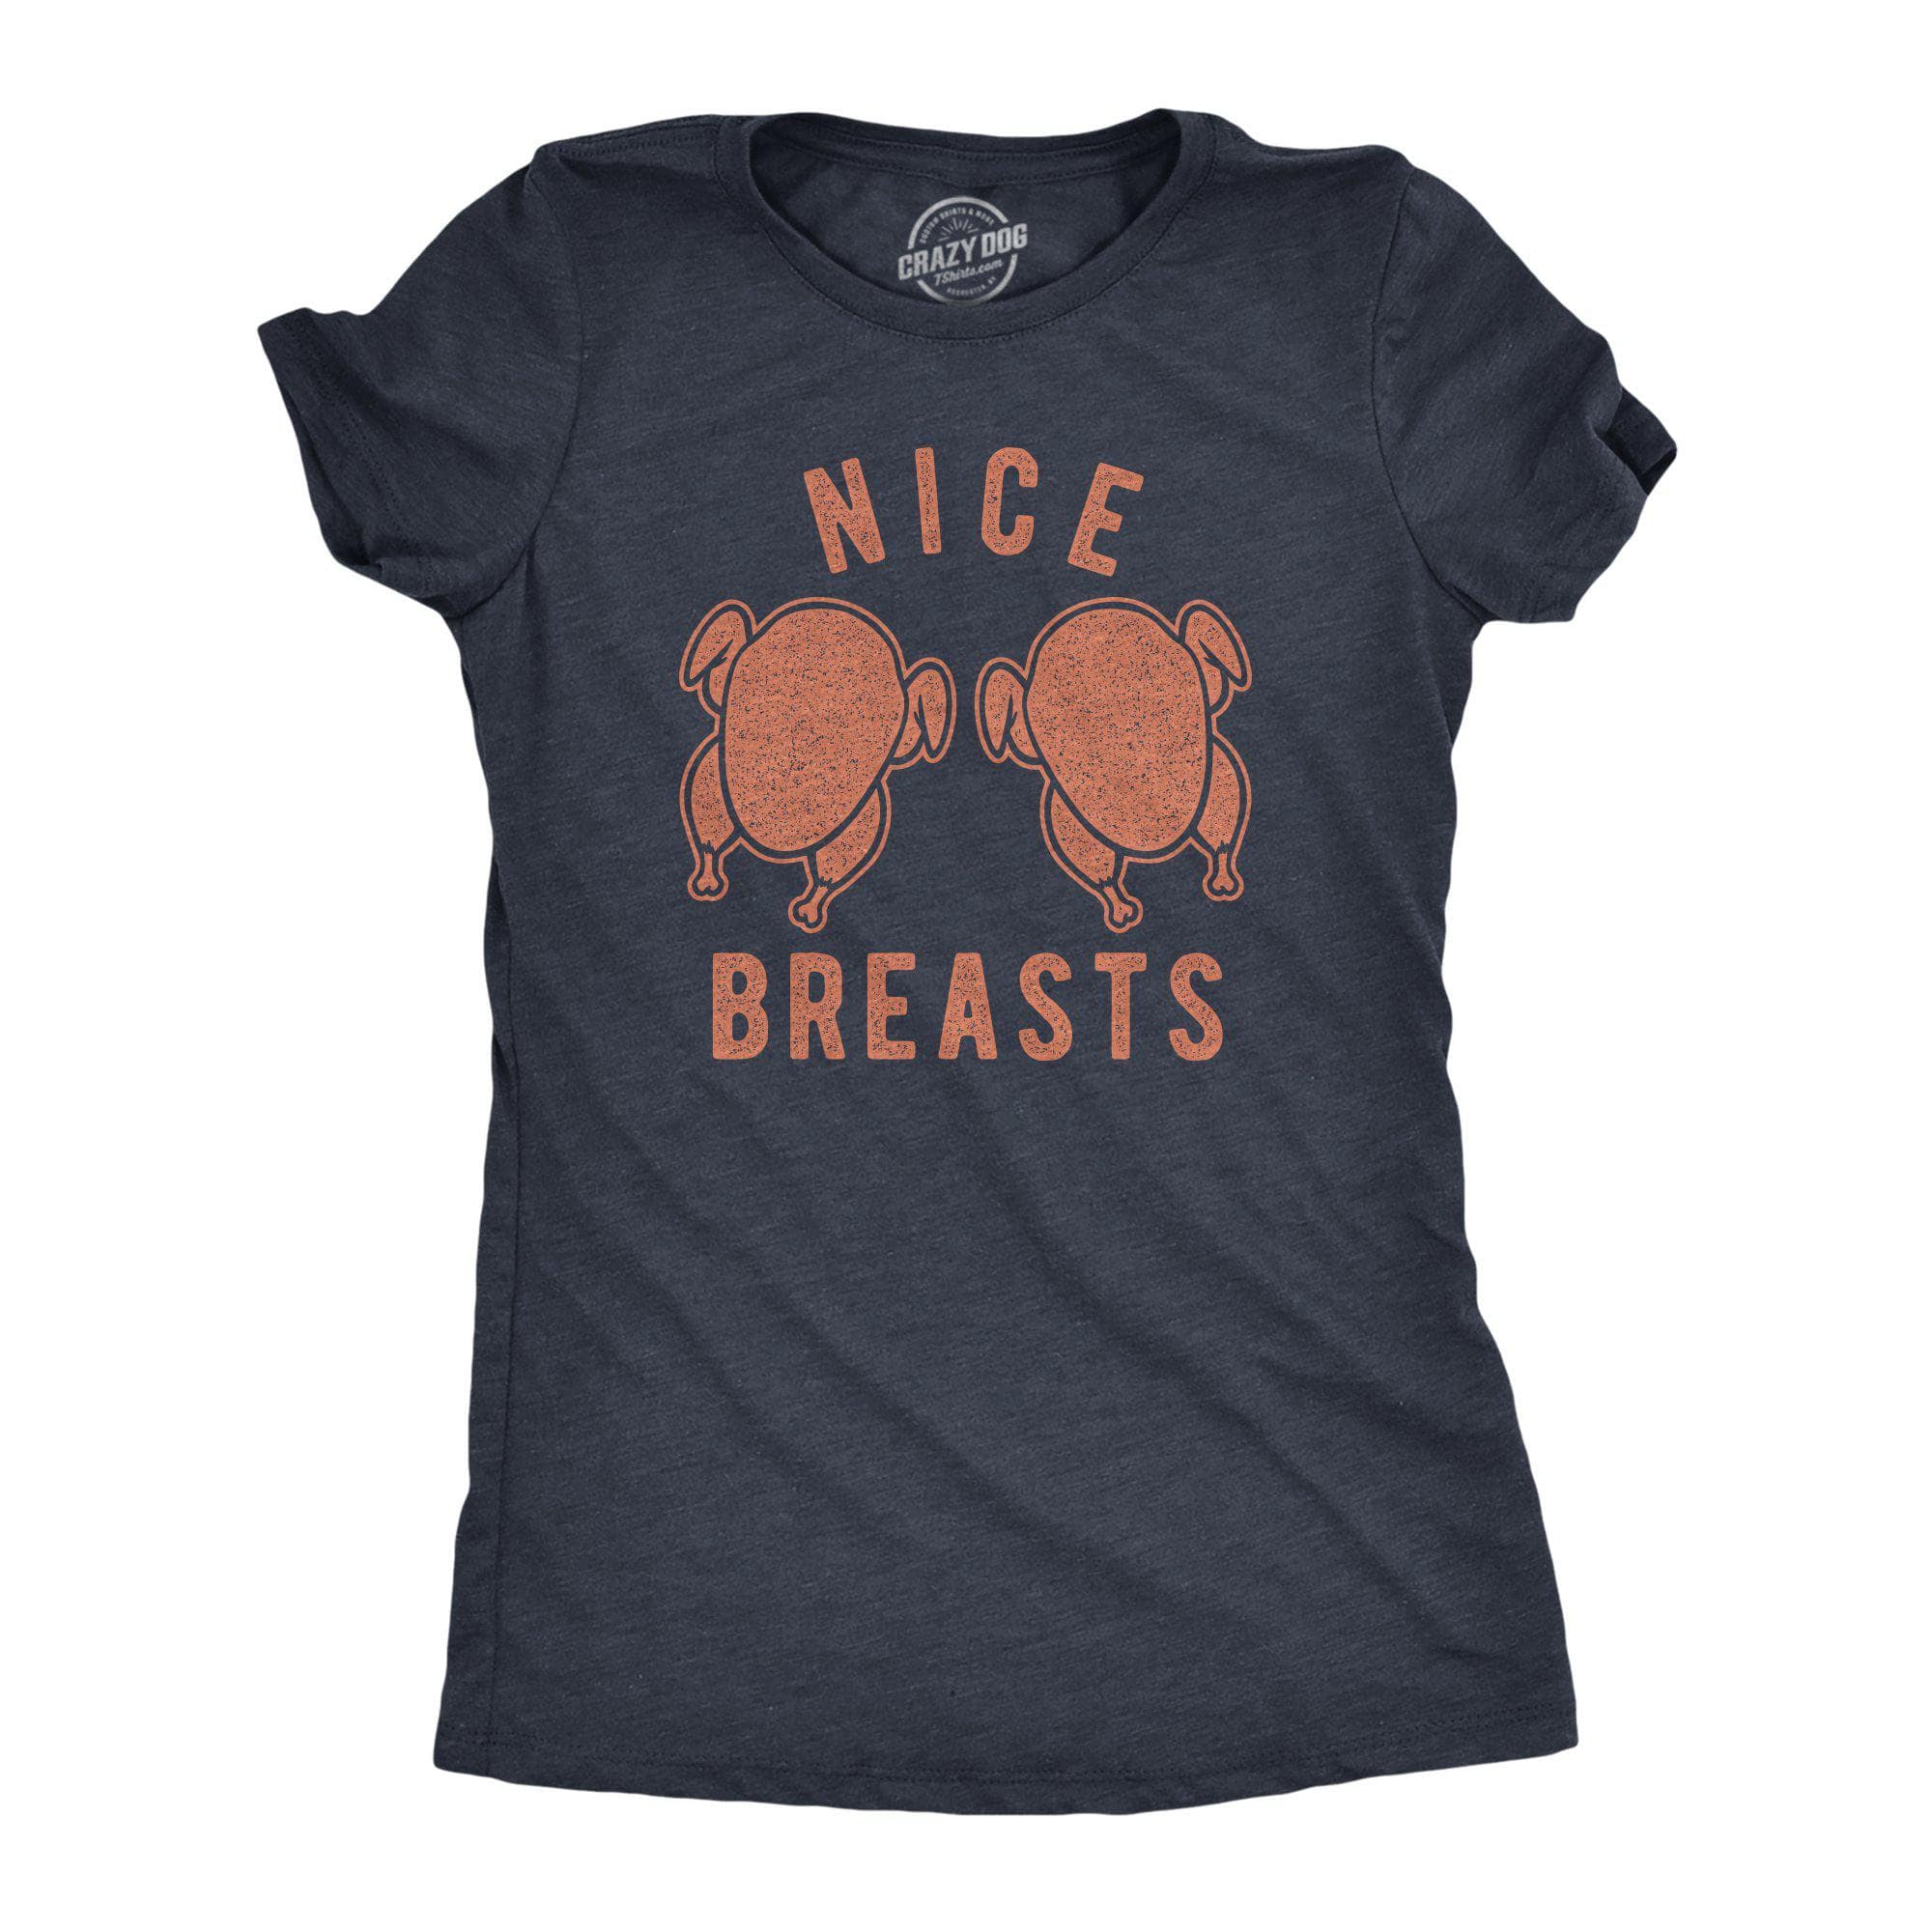 https://cdn.shopify.com/s/files/1/2959/1448/products/crazy-dog-t-shirts-womens-t-shirts-nice-turkey-breasts-women-s-tshirt-28621679394931_2000x.jpg?v=1634238971